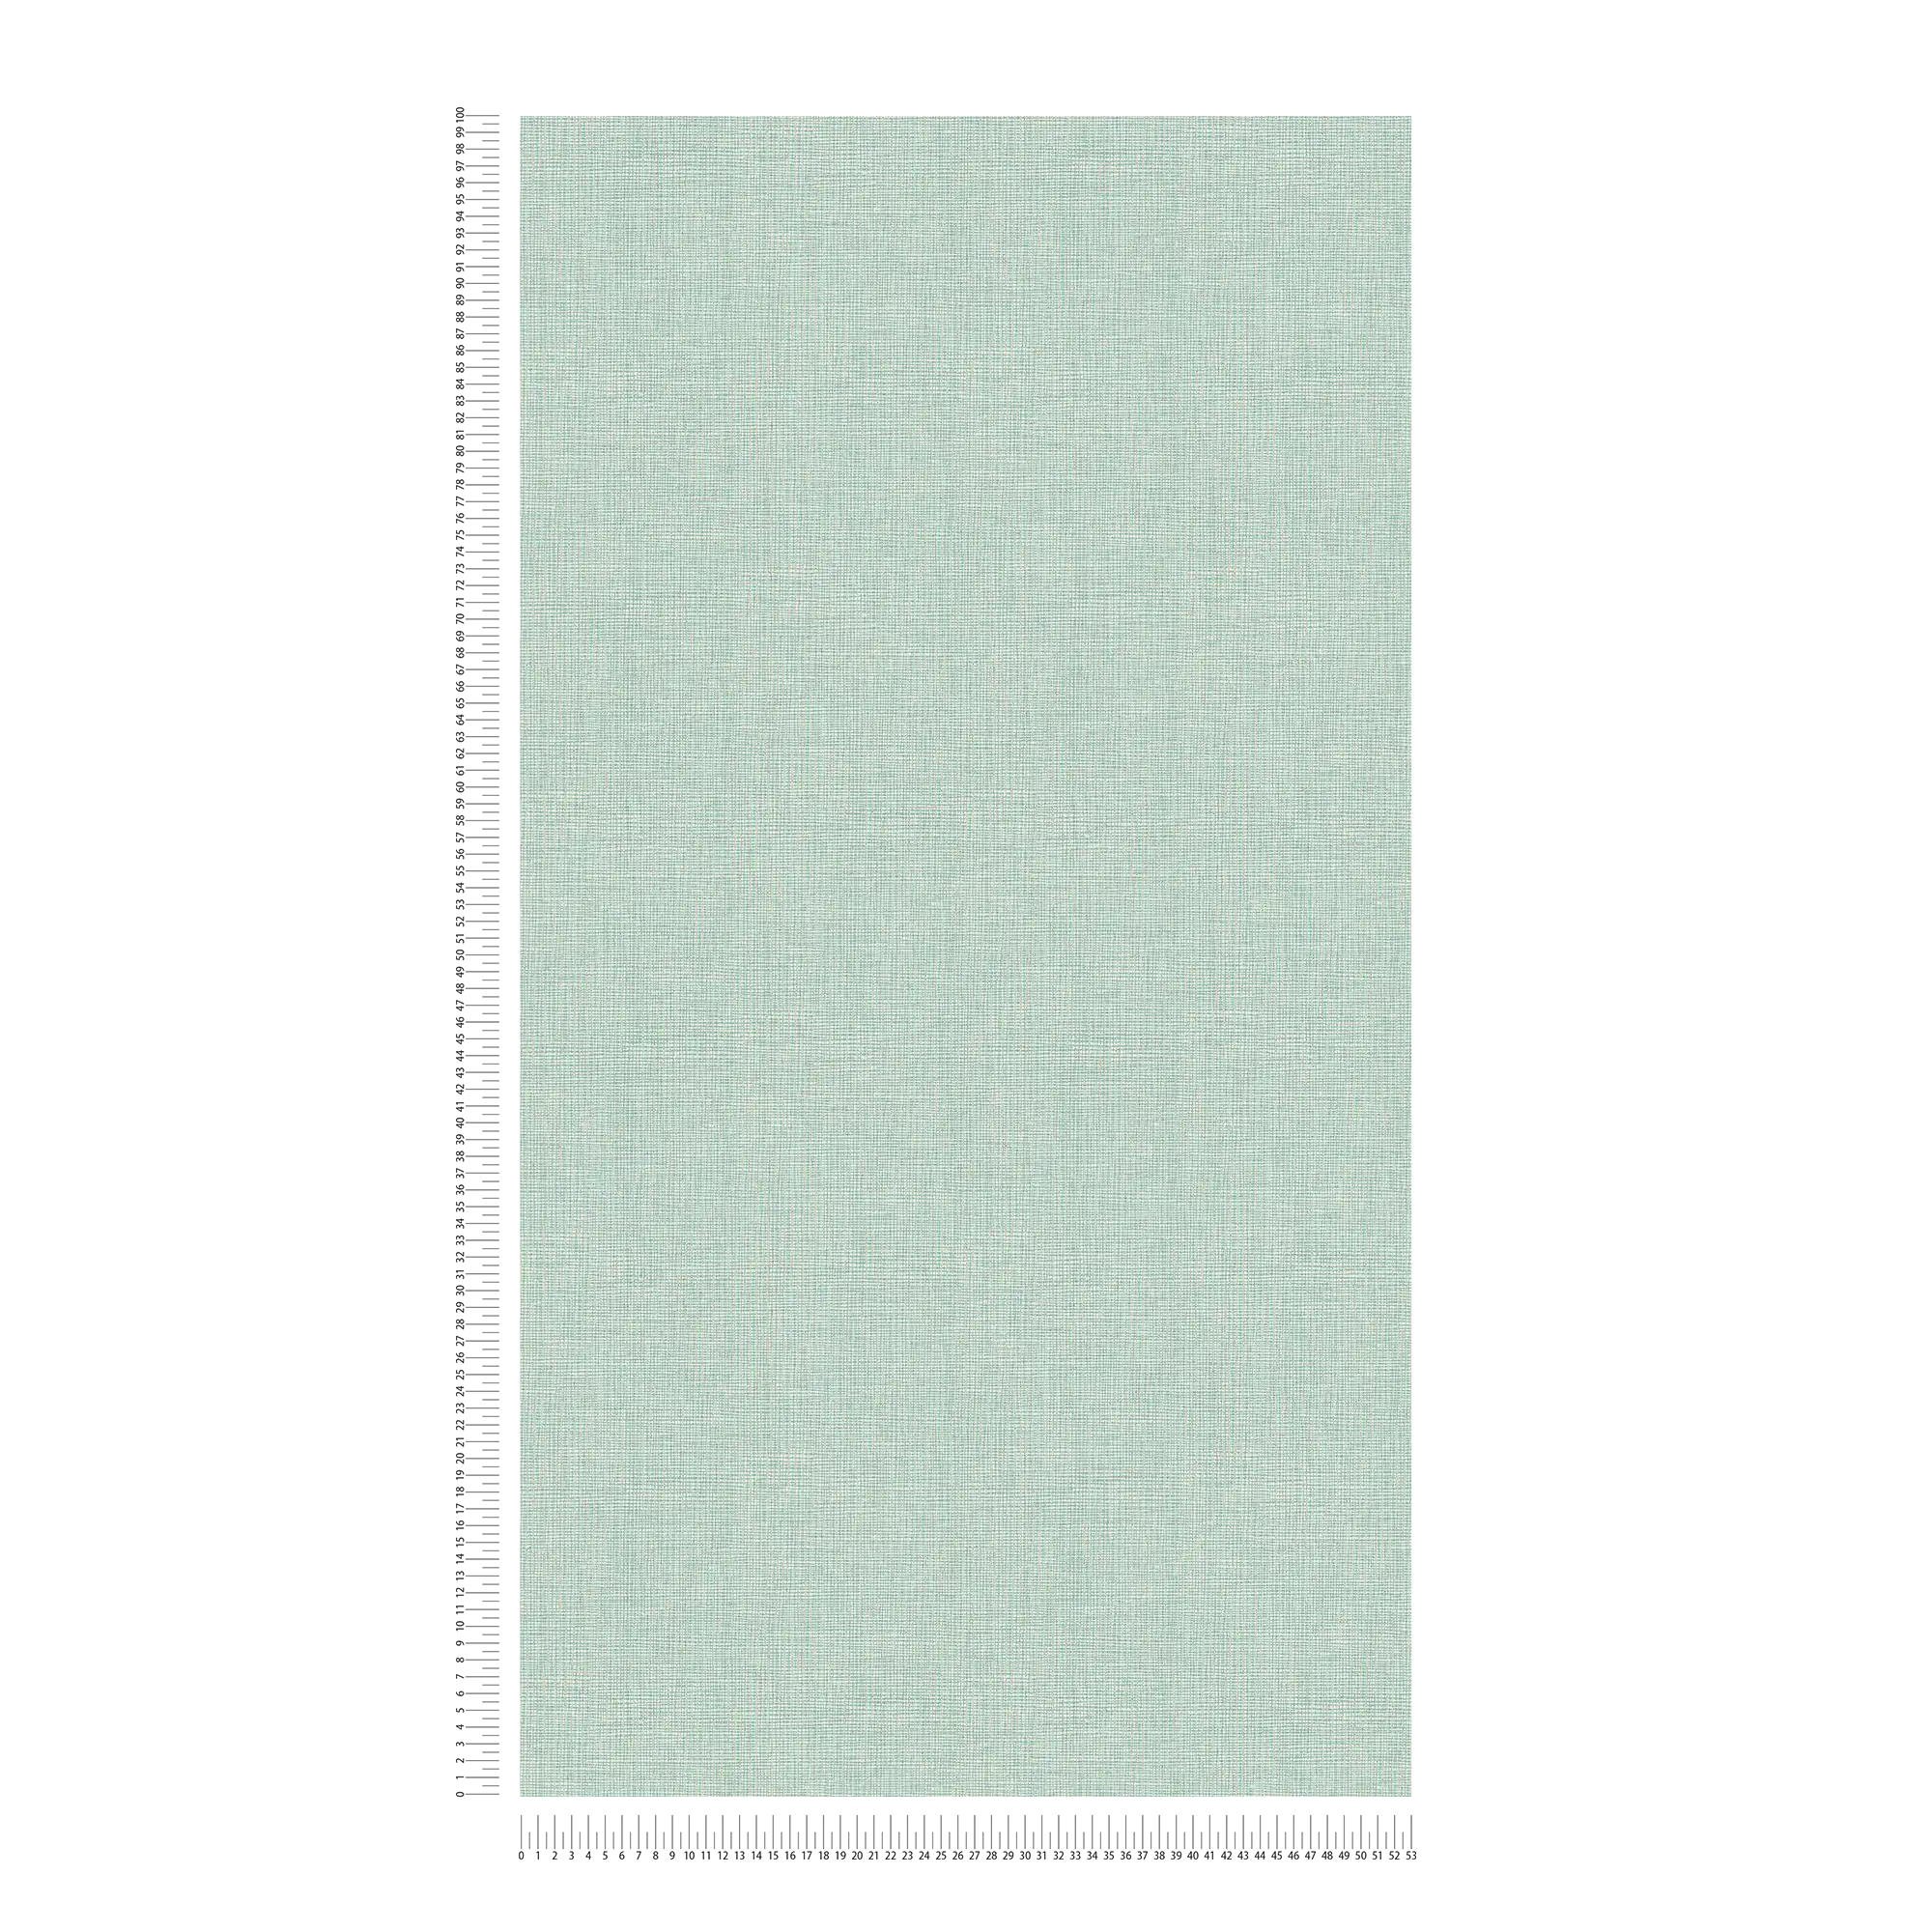             Carta da parati tessile verde chiaro con dettagli dorati - blu, grigio, argento
        